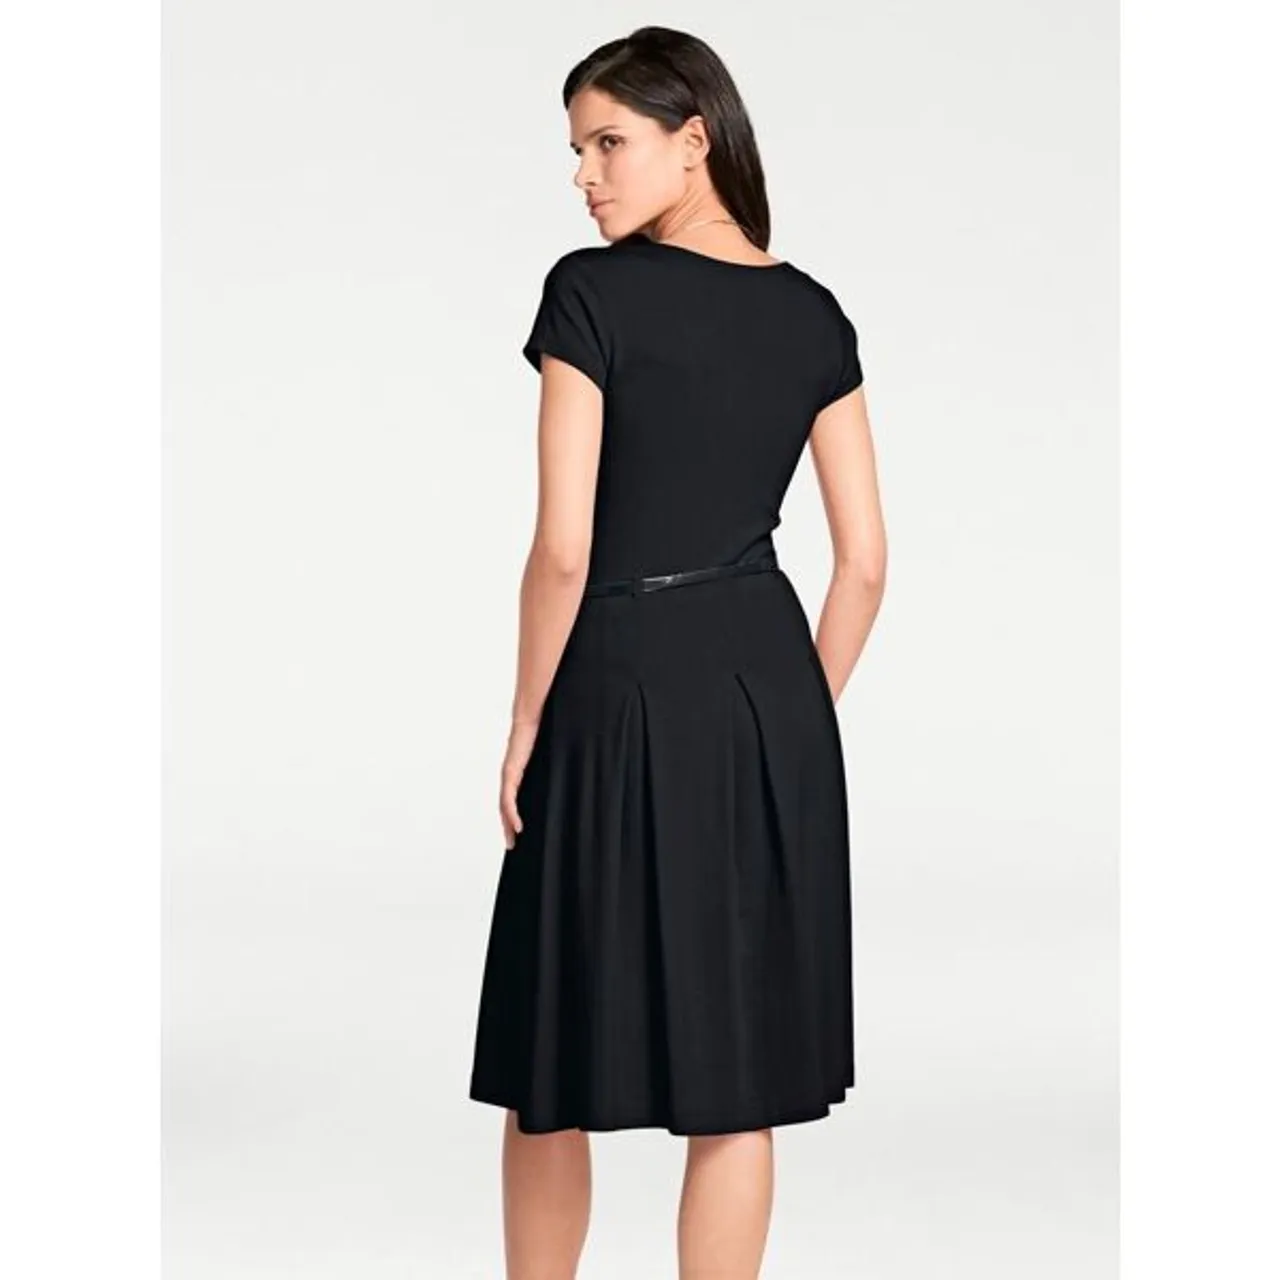 Jerseykleid HEINE "Jersey-Kleid" Gr. 44, Normalgrößen, schwarz Damen Kleider Freizeitkleider